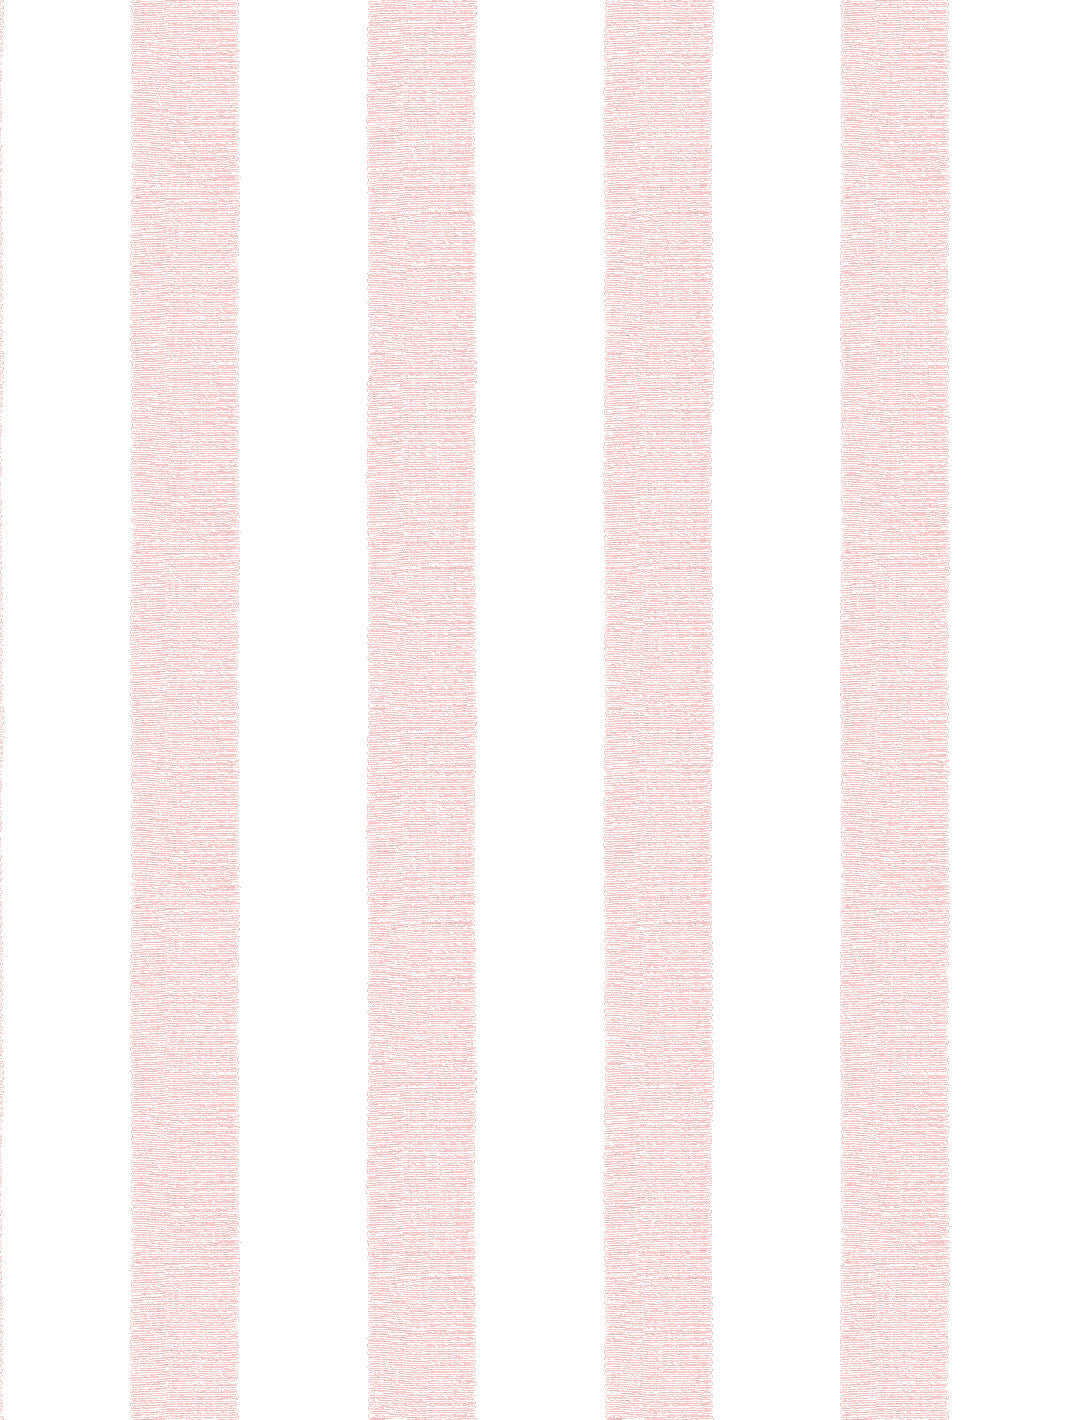 'Grosgrain Stripe on White' Wallpaper by Sarah Jessica Parker - Slipper